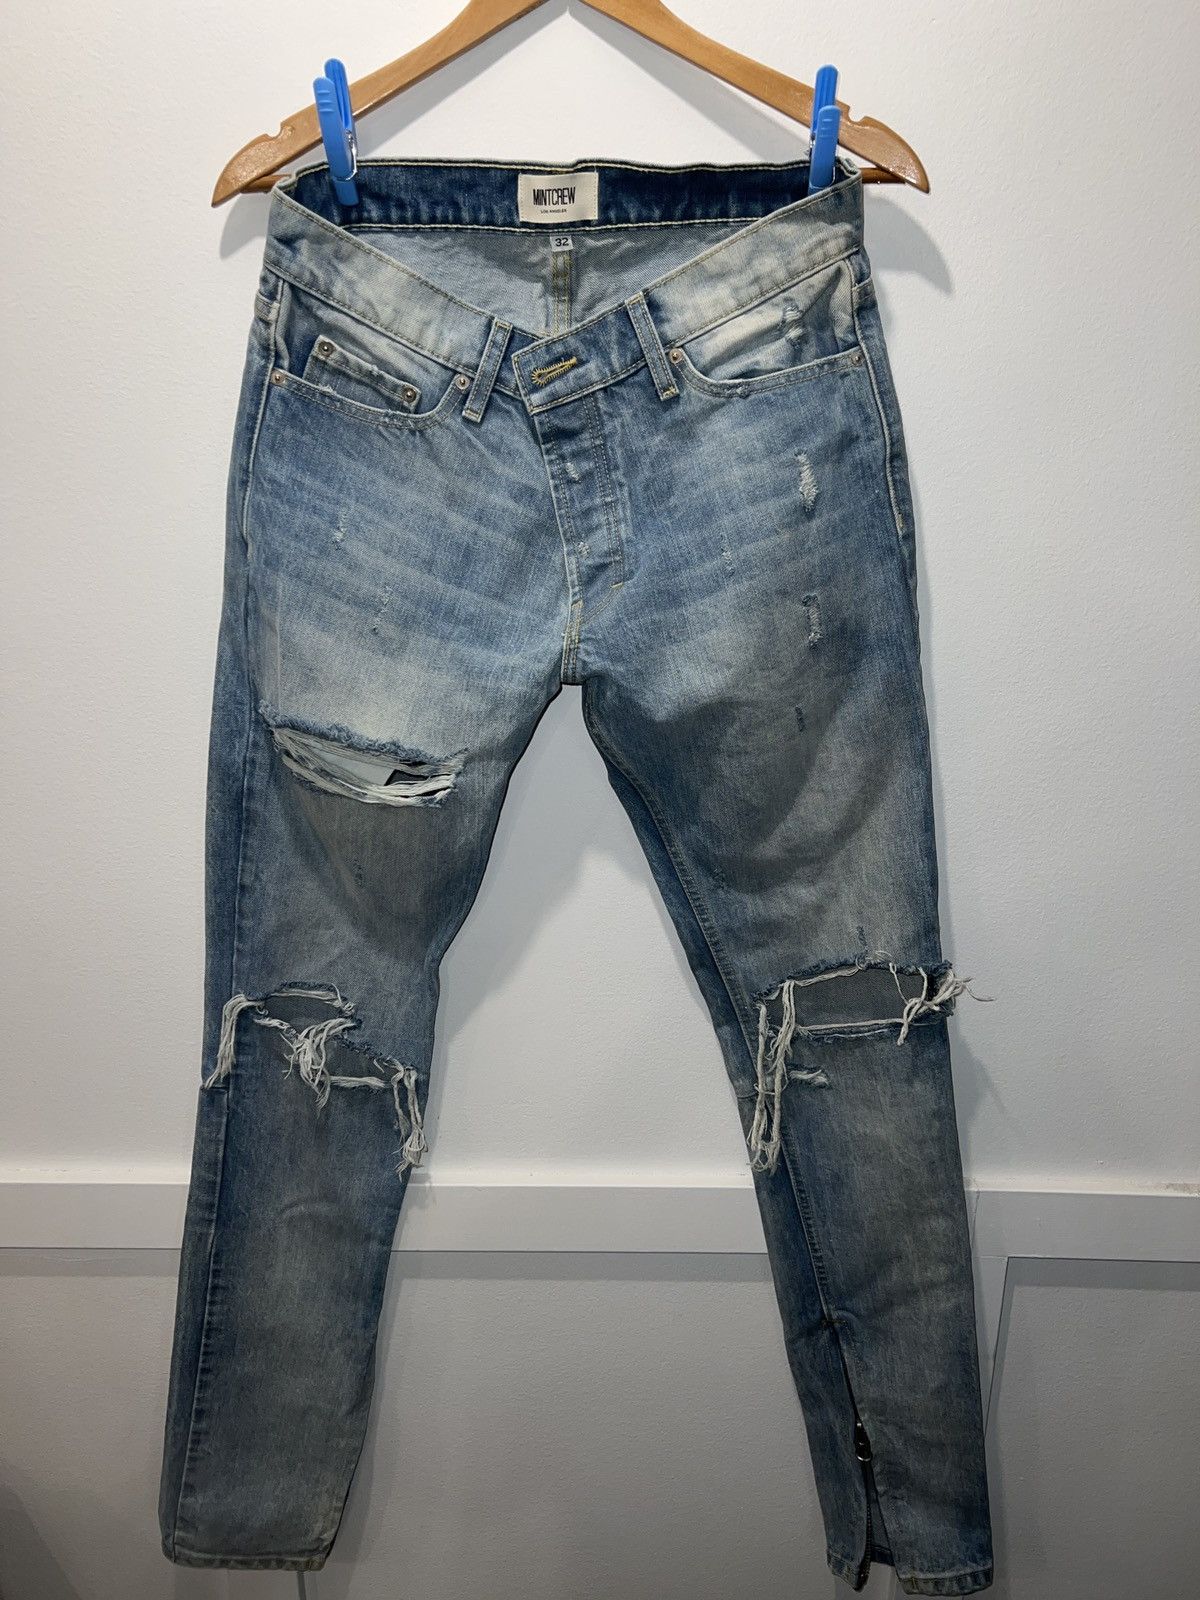 Mintcrew Mintcrew Rockstar Skinnies jeans | Grailed